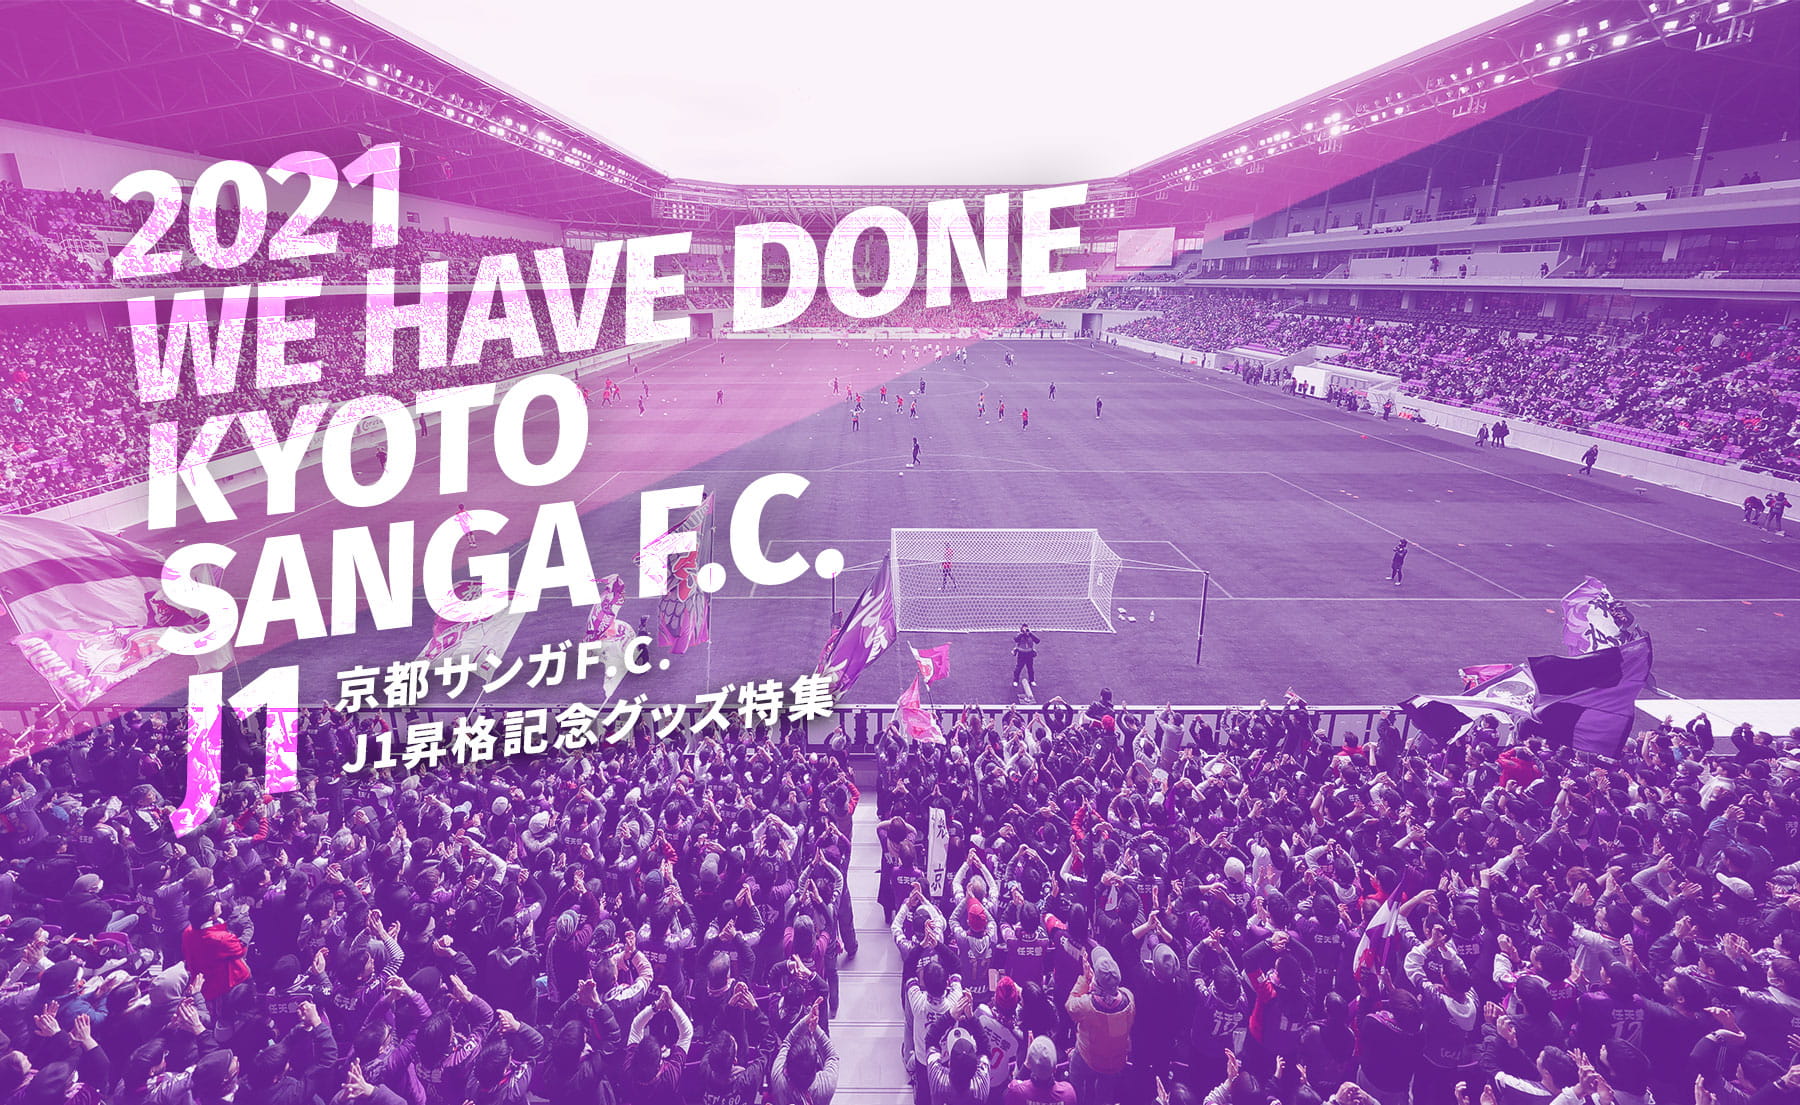 2021 WE HAVE DONE KYOTO SANGA F.C. 京都サンガF.C.J1昇格記念グッズ特集